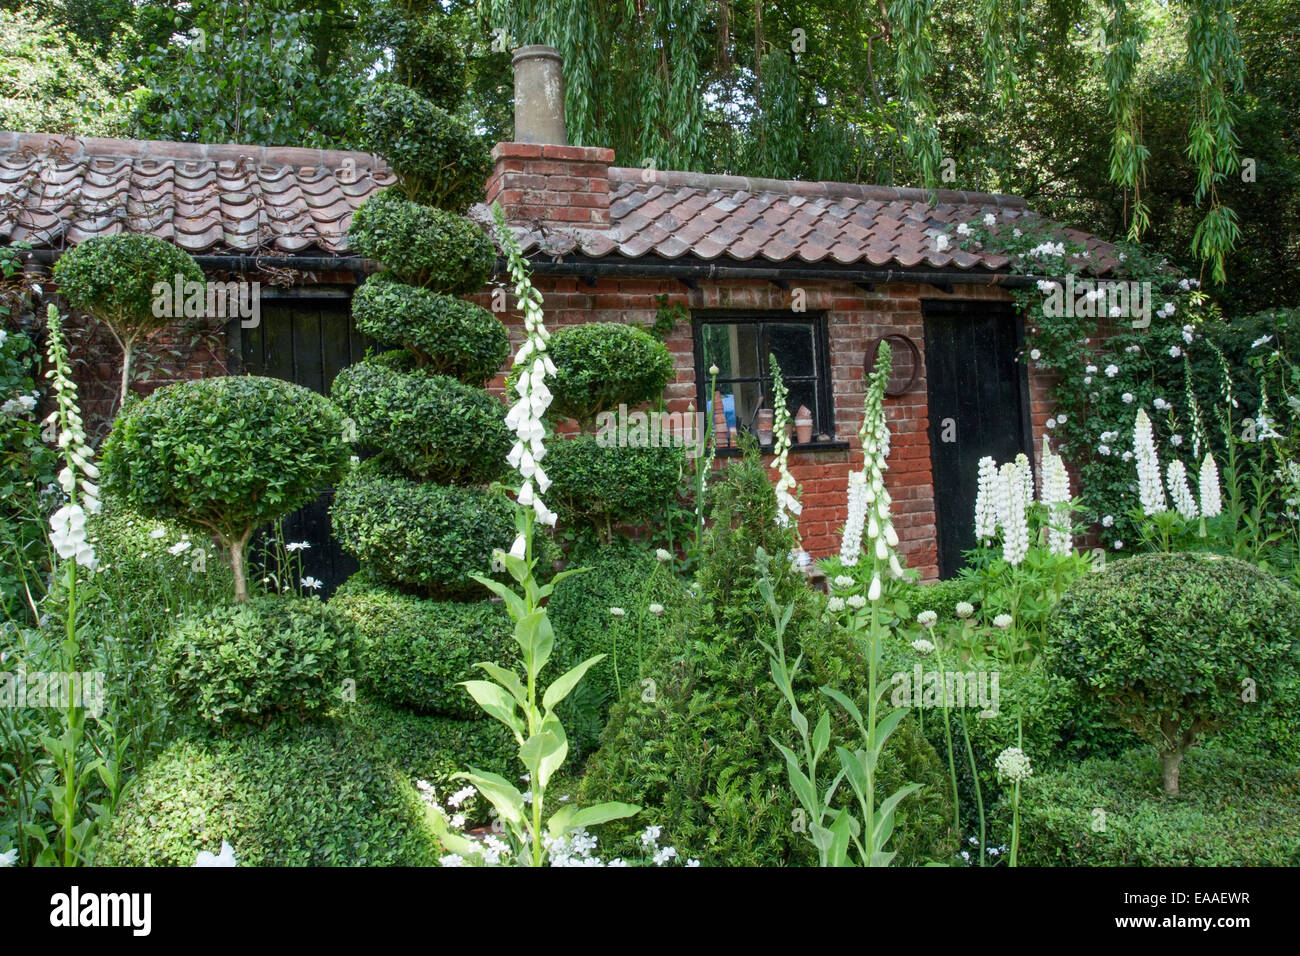 Chelsea Flower Show 2014. Buxus sempervirens (Fort), topiaire Lupinus (lupin) et digitale (digitales) en face d'un vieux pottin Banque D'Images